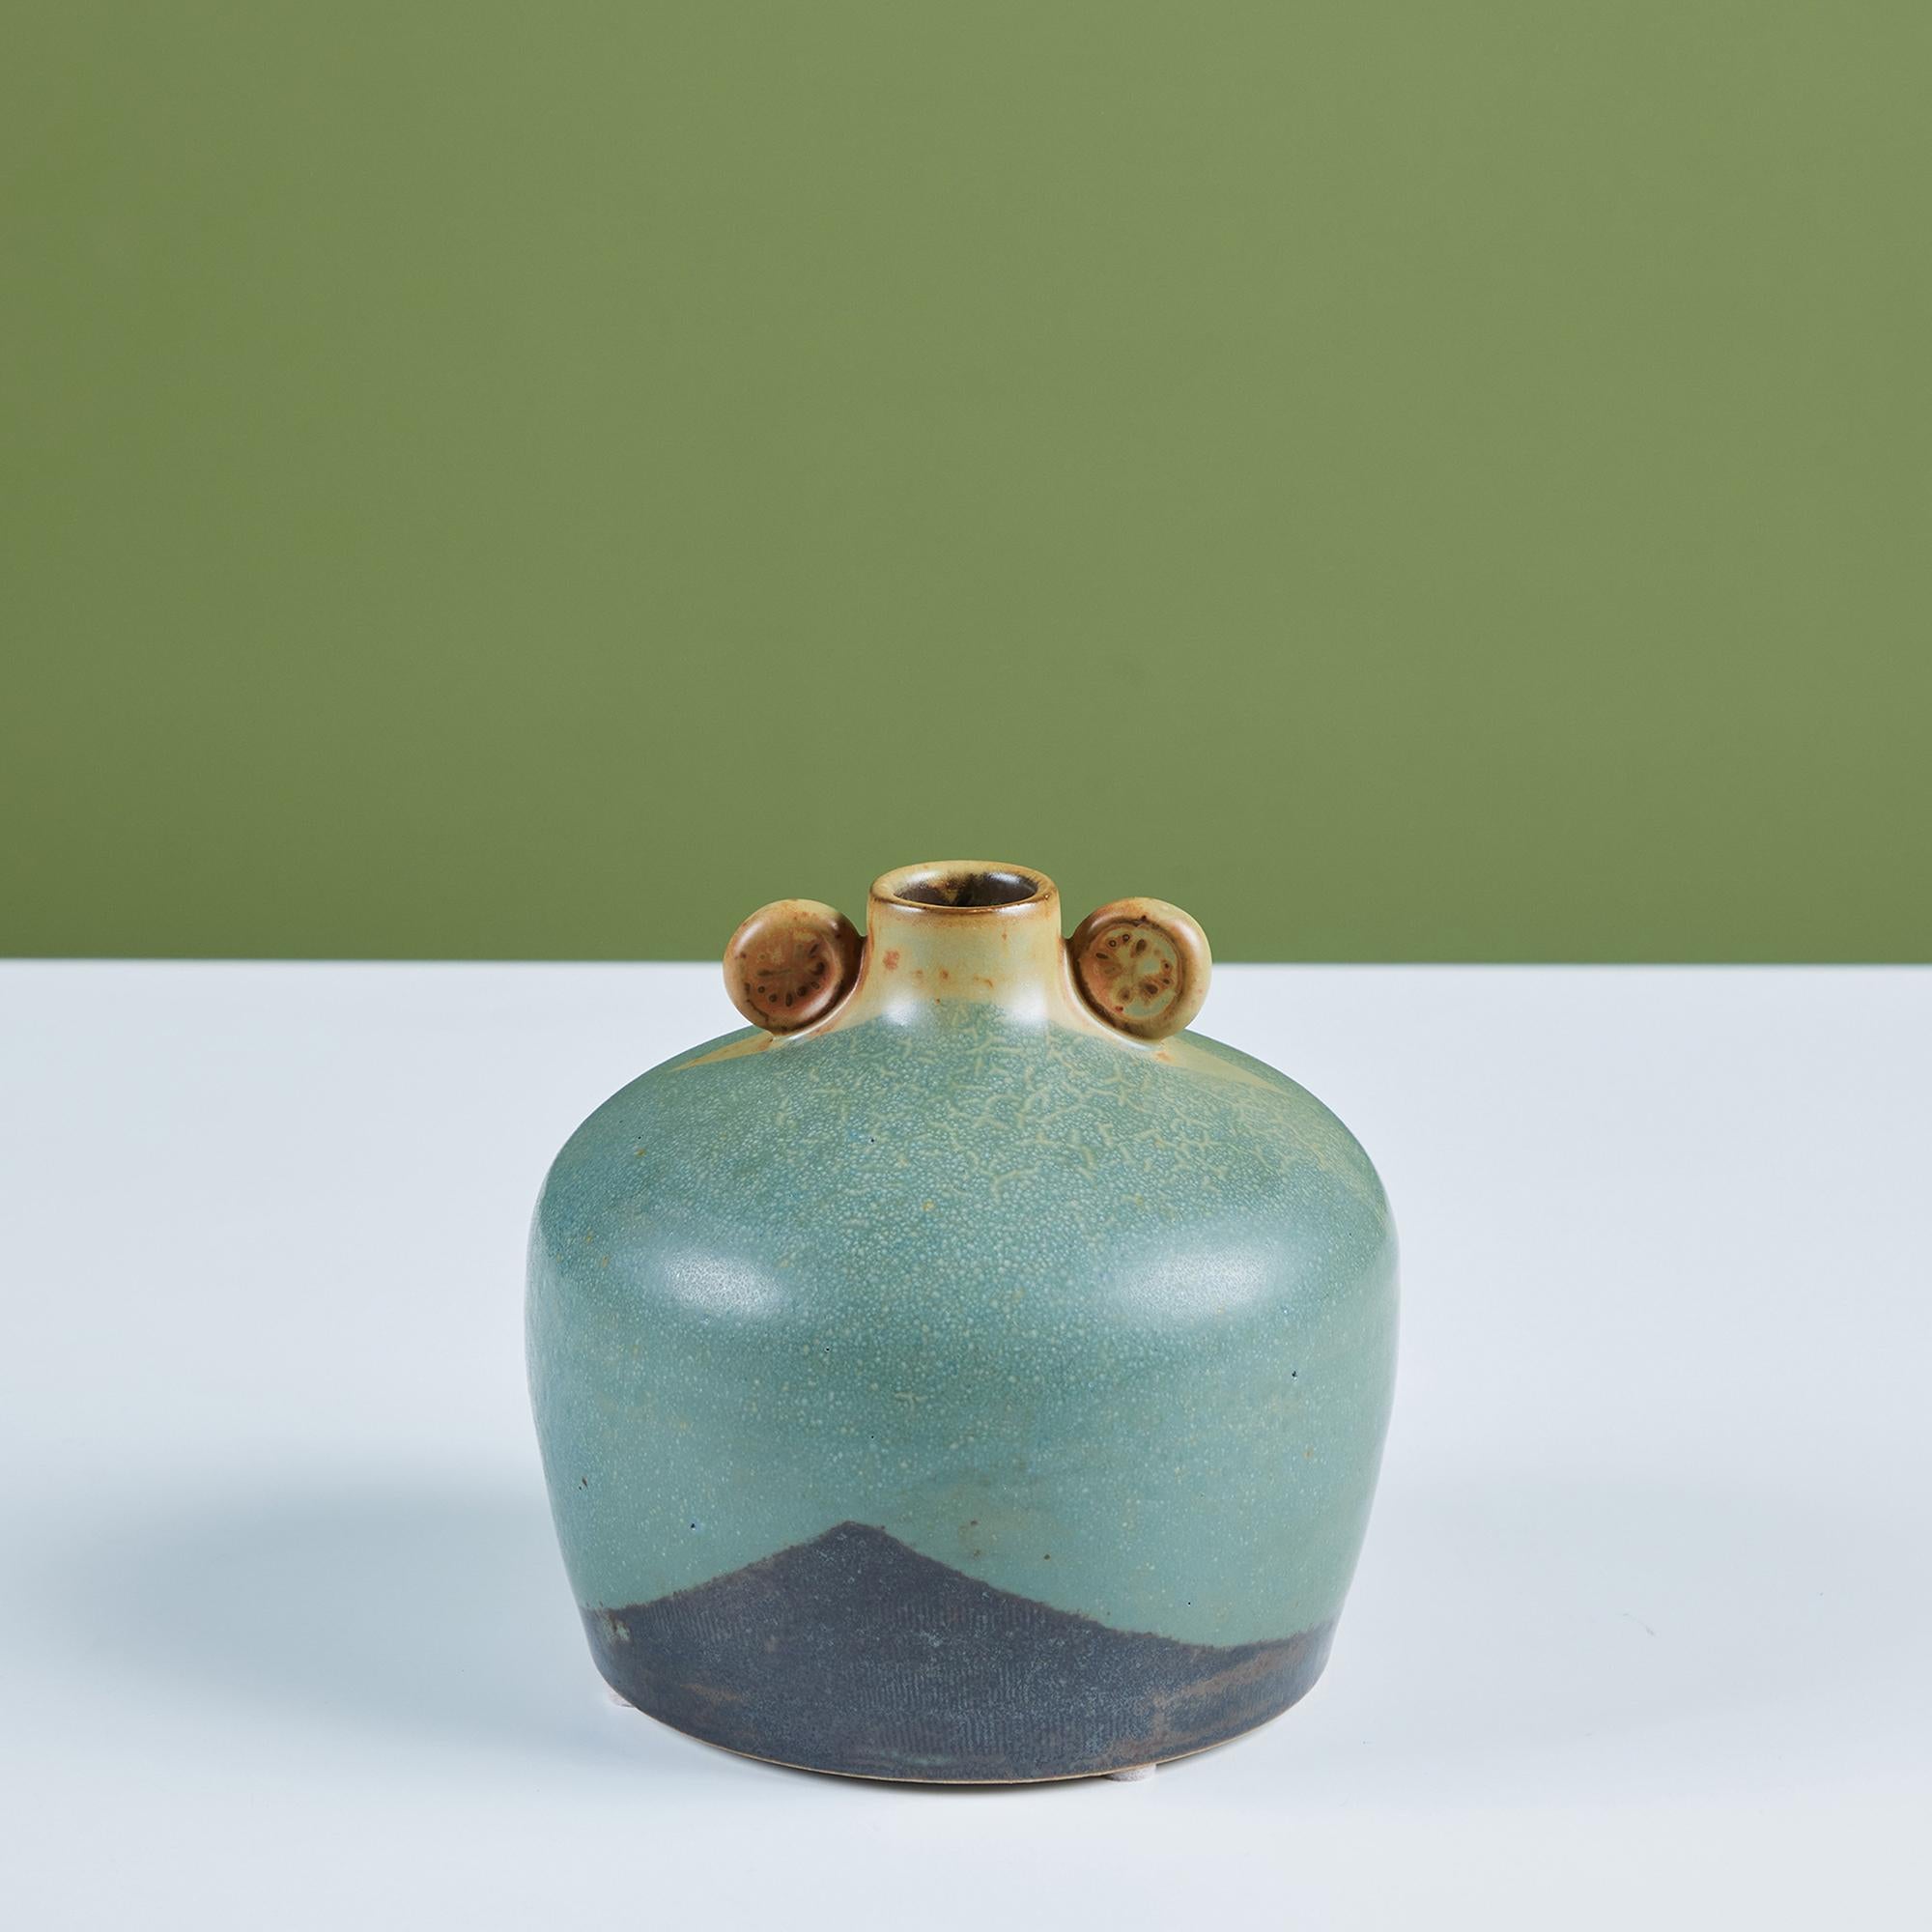 Eine abgerundete Knospenvase aus Studio-Keramik mit einer zweifarbigen blauen Glasur und kleinen abgerundeten Henkeln an der Öffnung der Vase.

Abmessungen
5,5